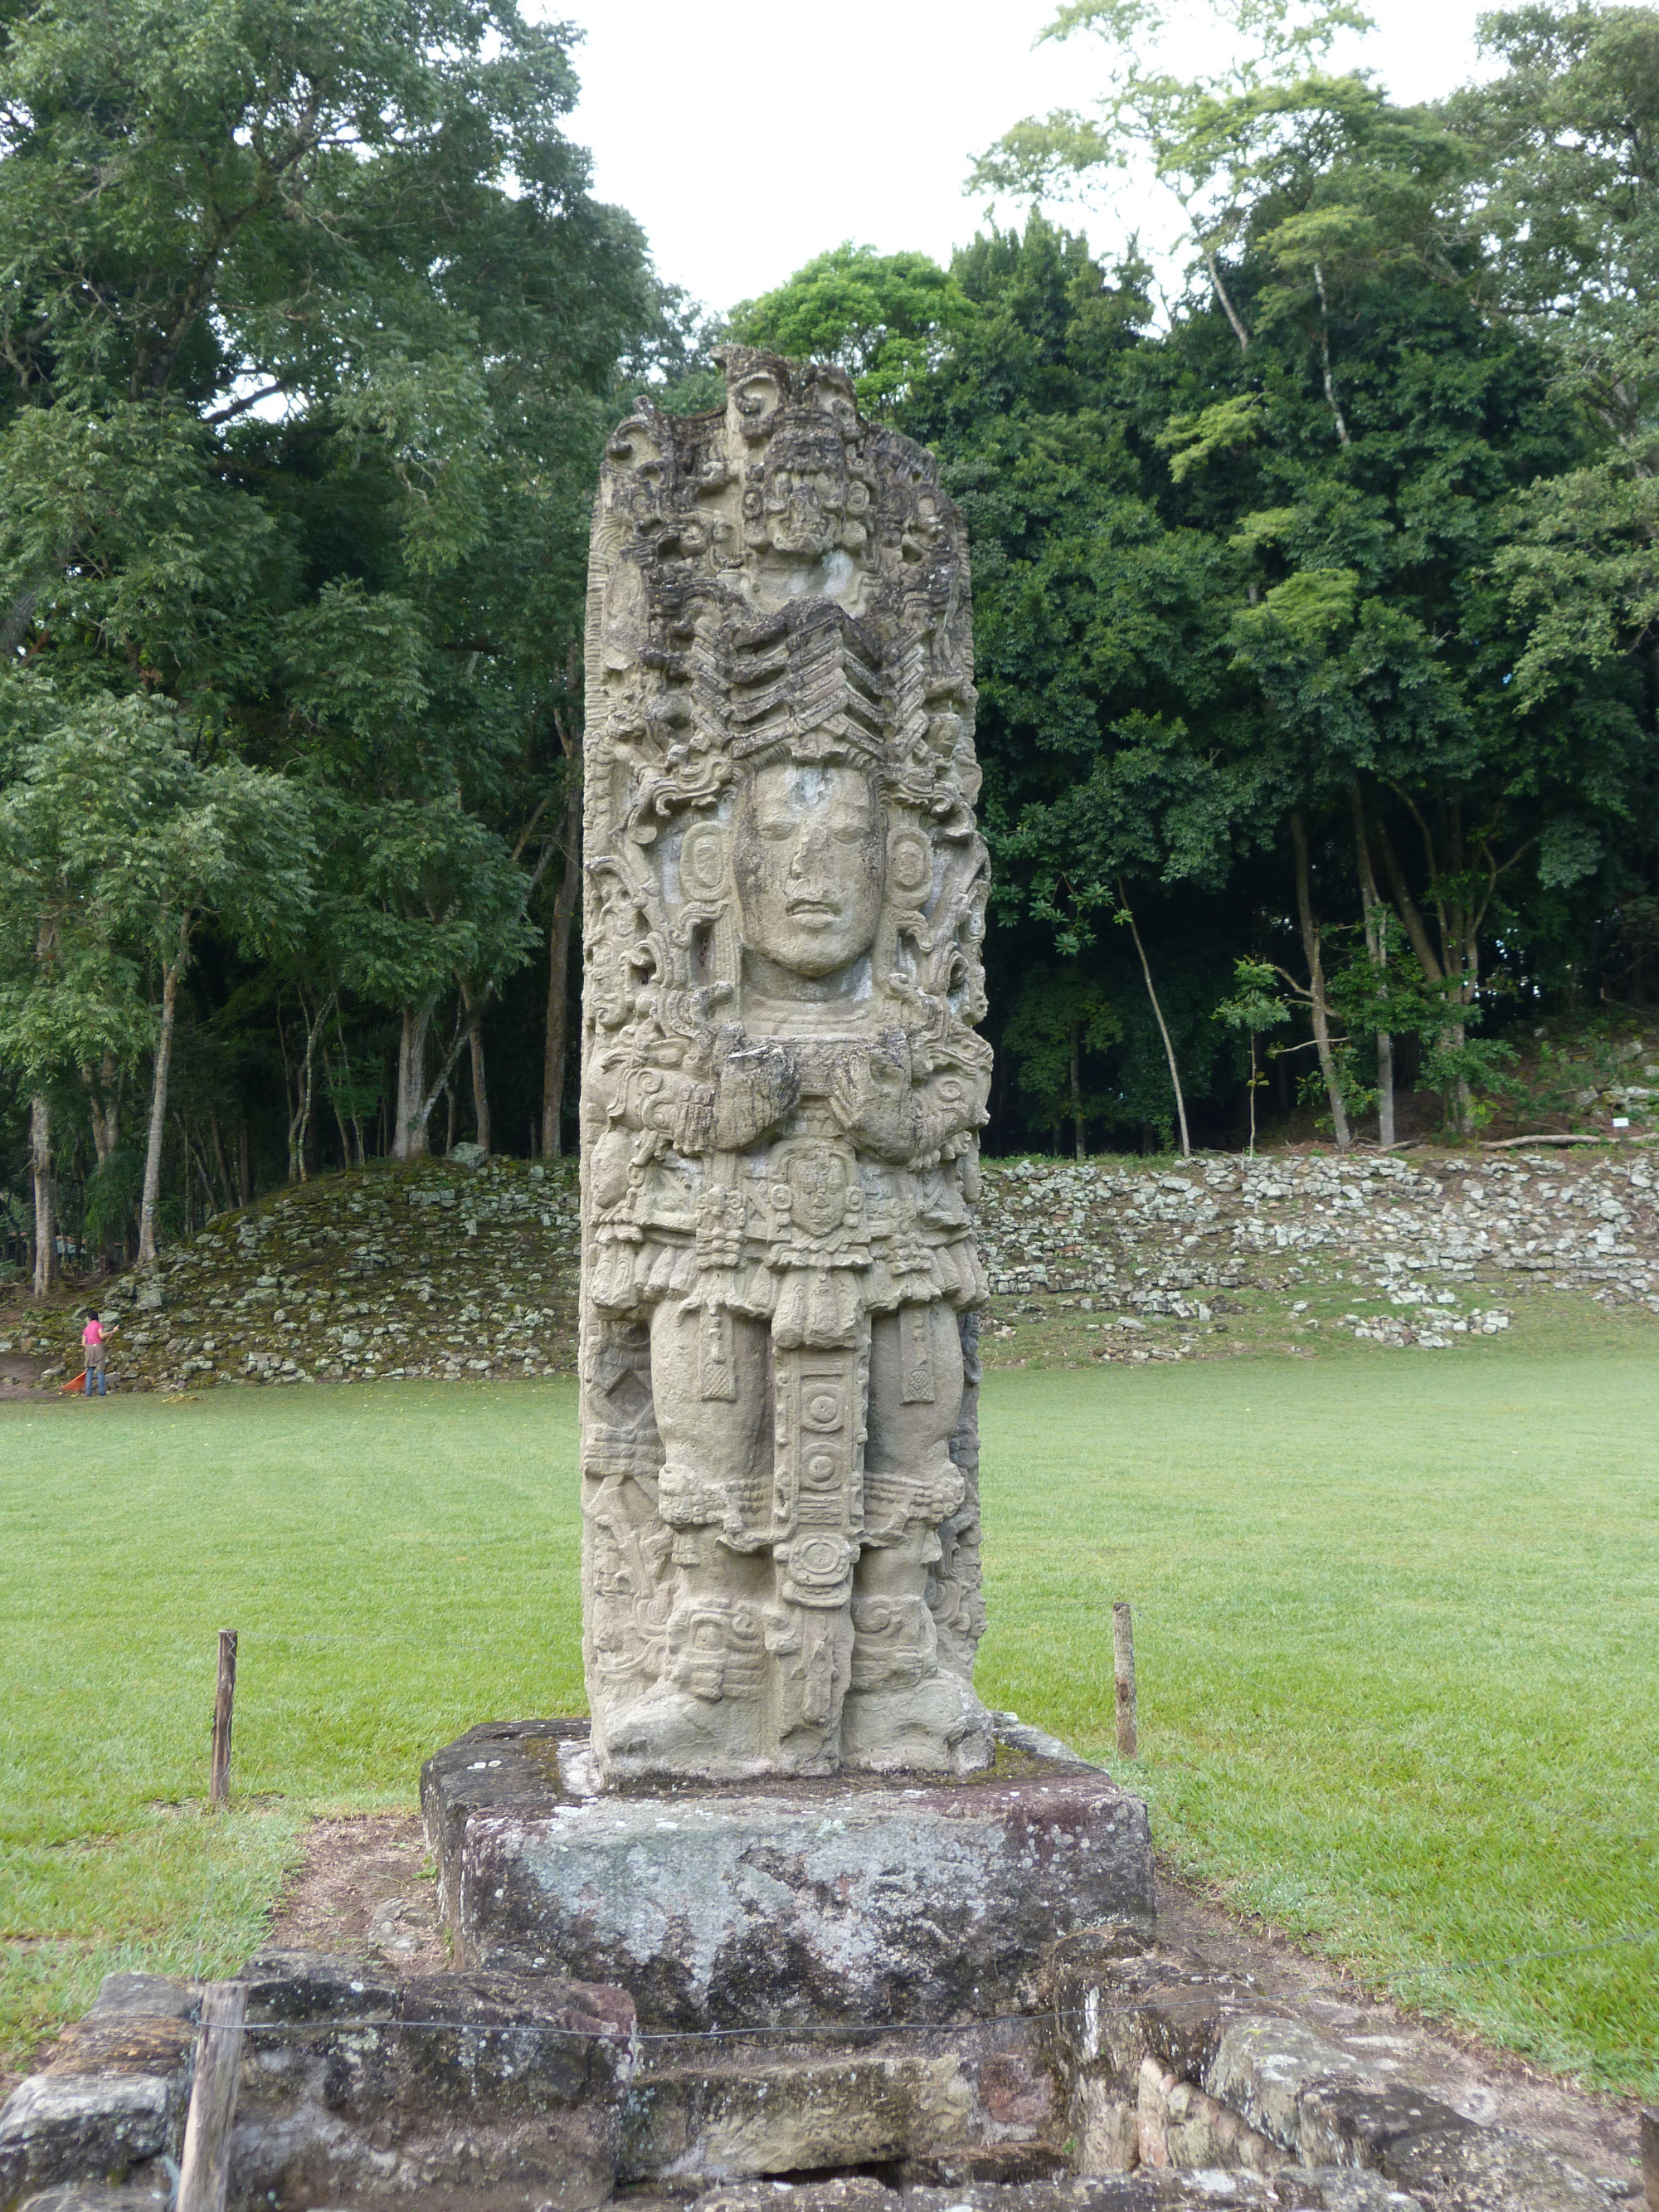 Stela H at Copán, commissioned by Uaxaclajuun Ub'aah K'awiil.